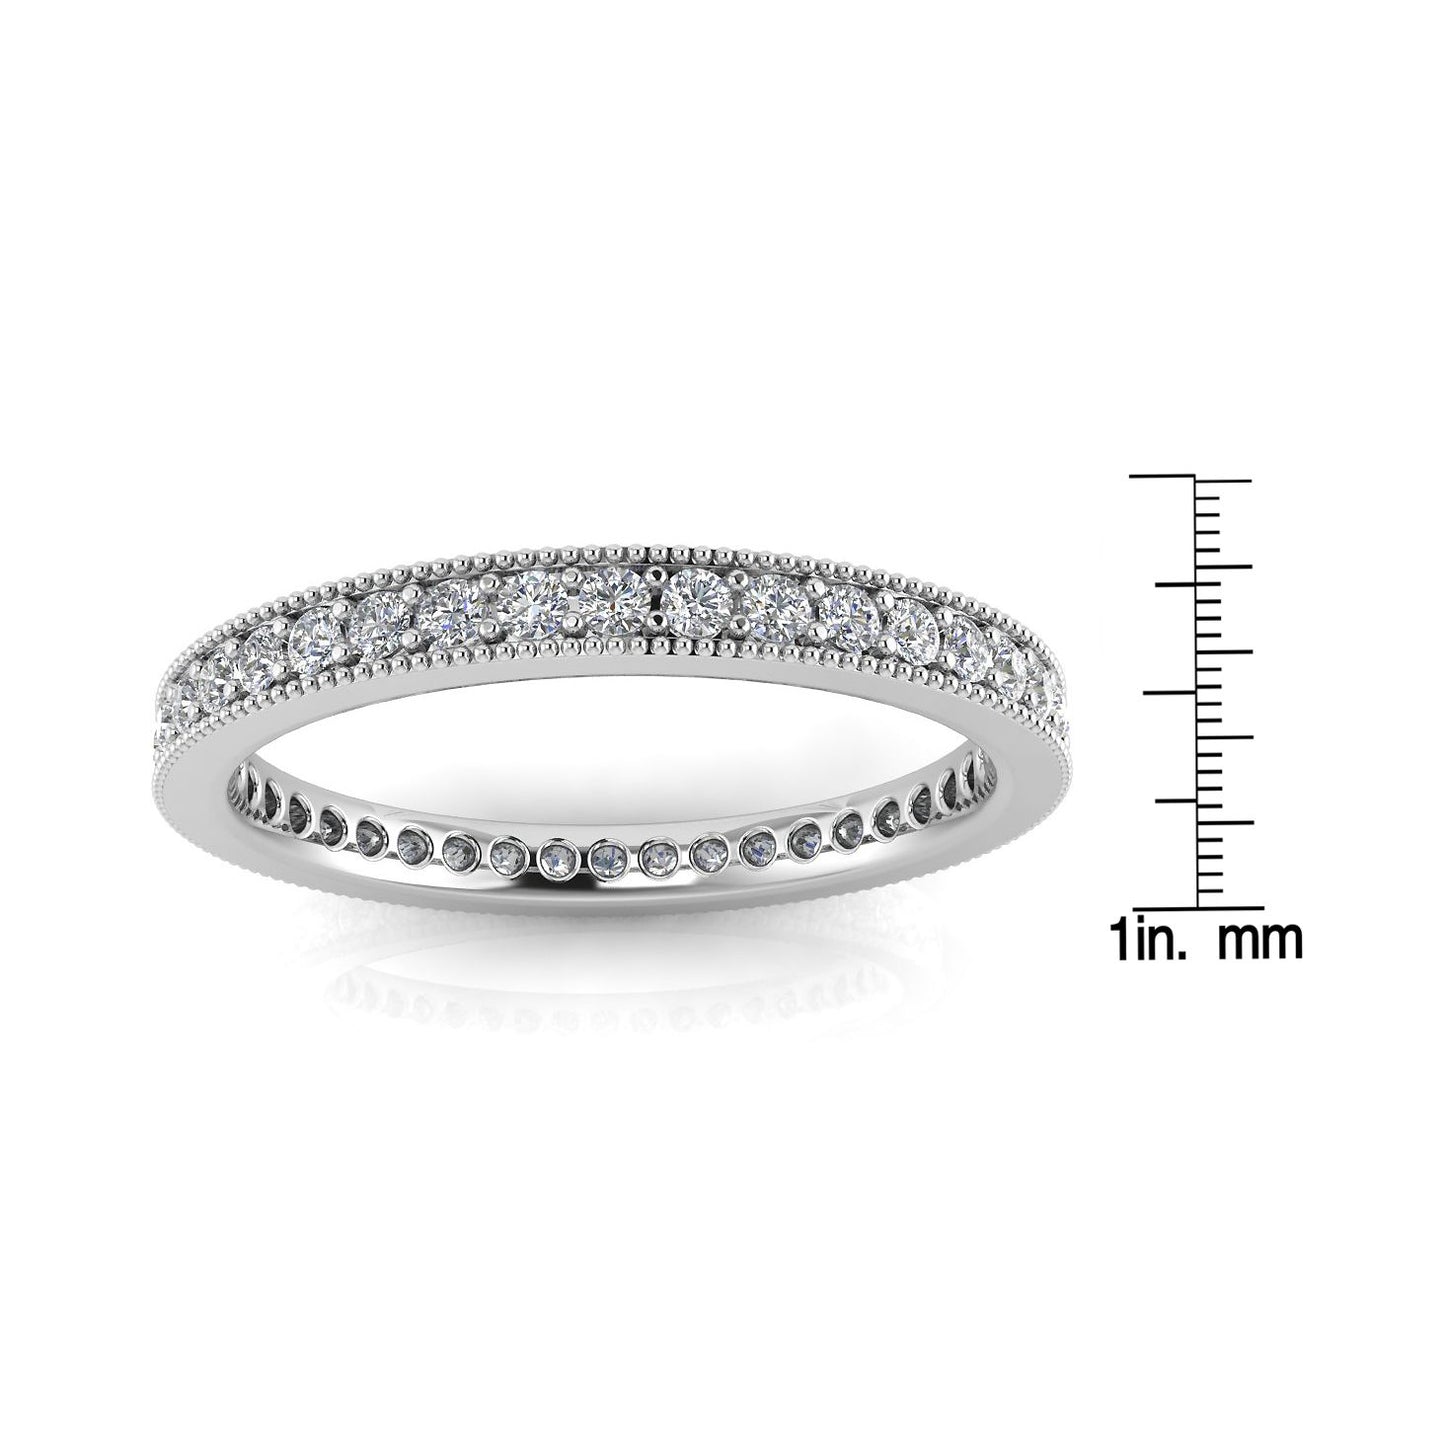 Round Brilliant Cut Diamond Pave & Milgrain Set Eternity Ring In Platinum  (0.68ct. Tw.) Ring Size 5.5